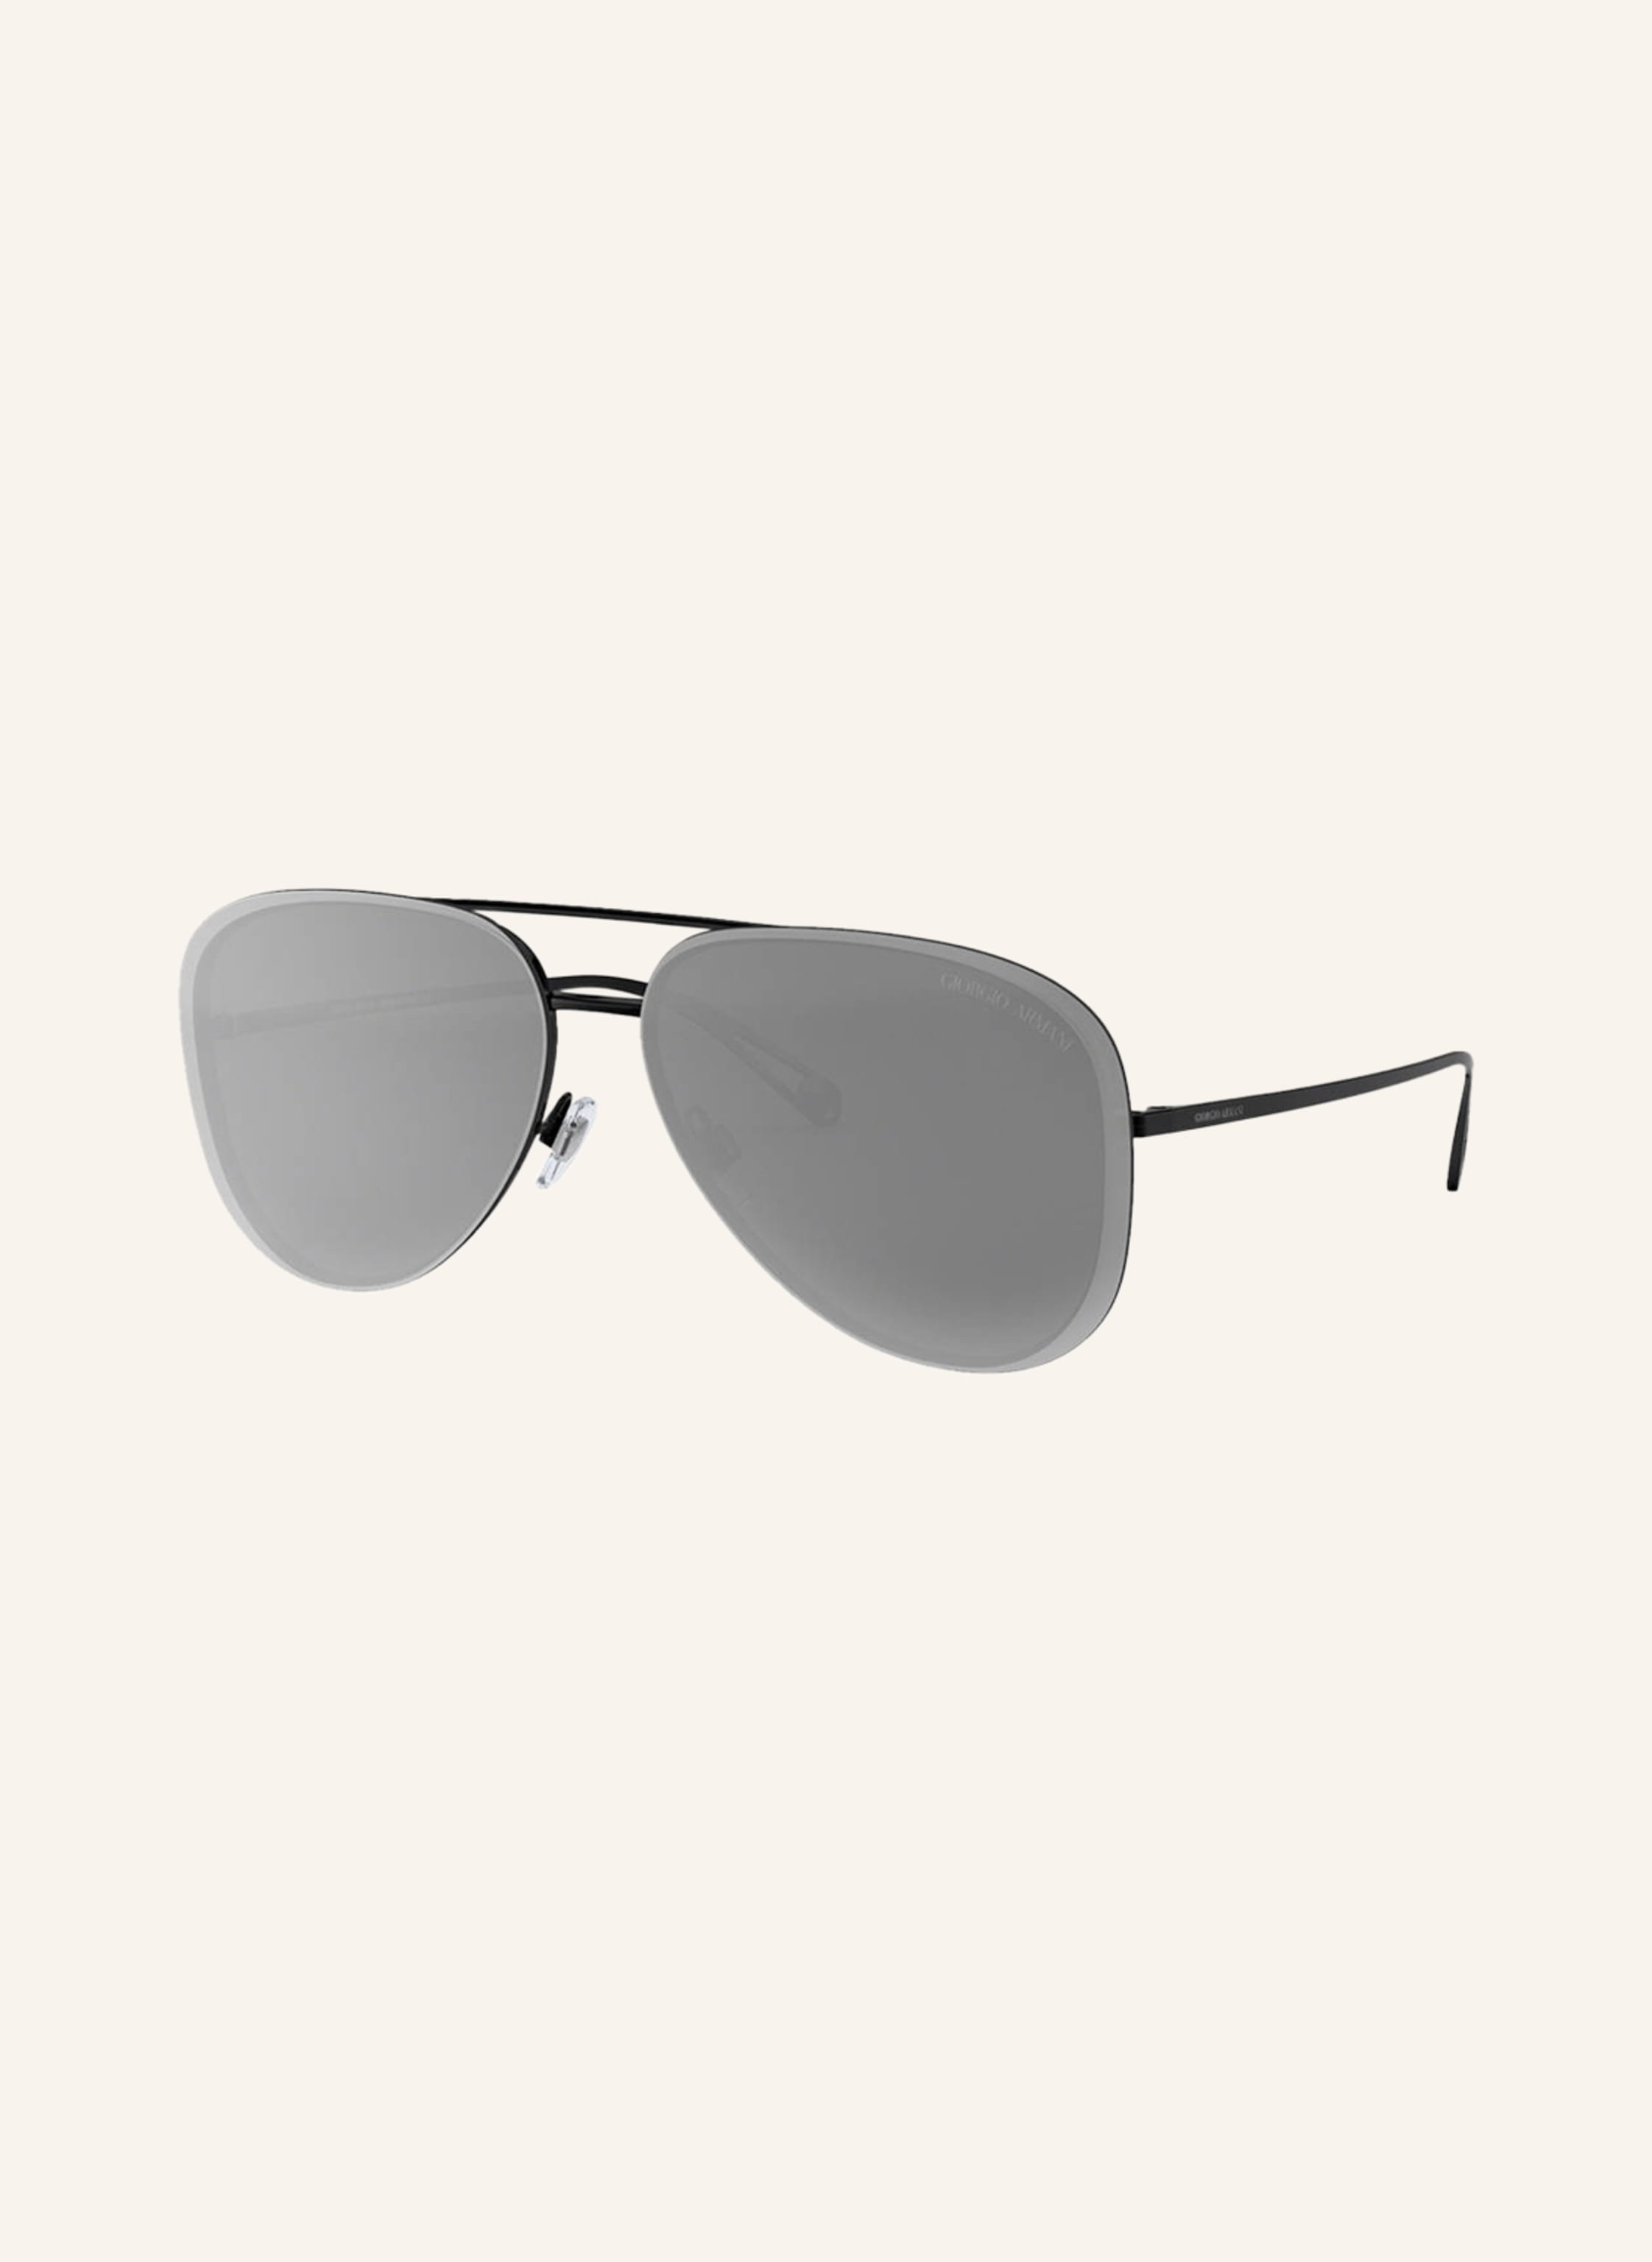 GIORGIO ARMANI Sunglasses AR6084 in 3014/ 6g - black/gray | Breuninger